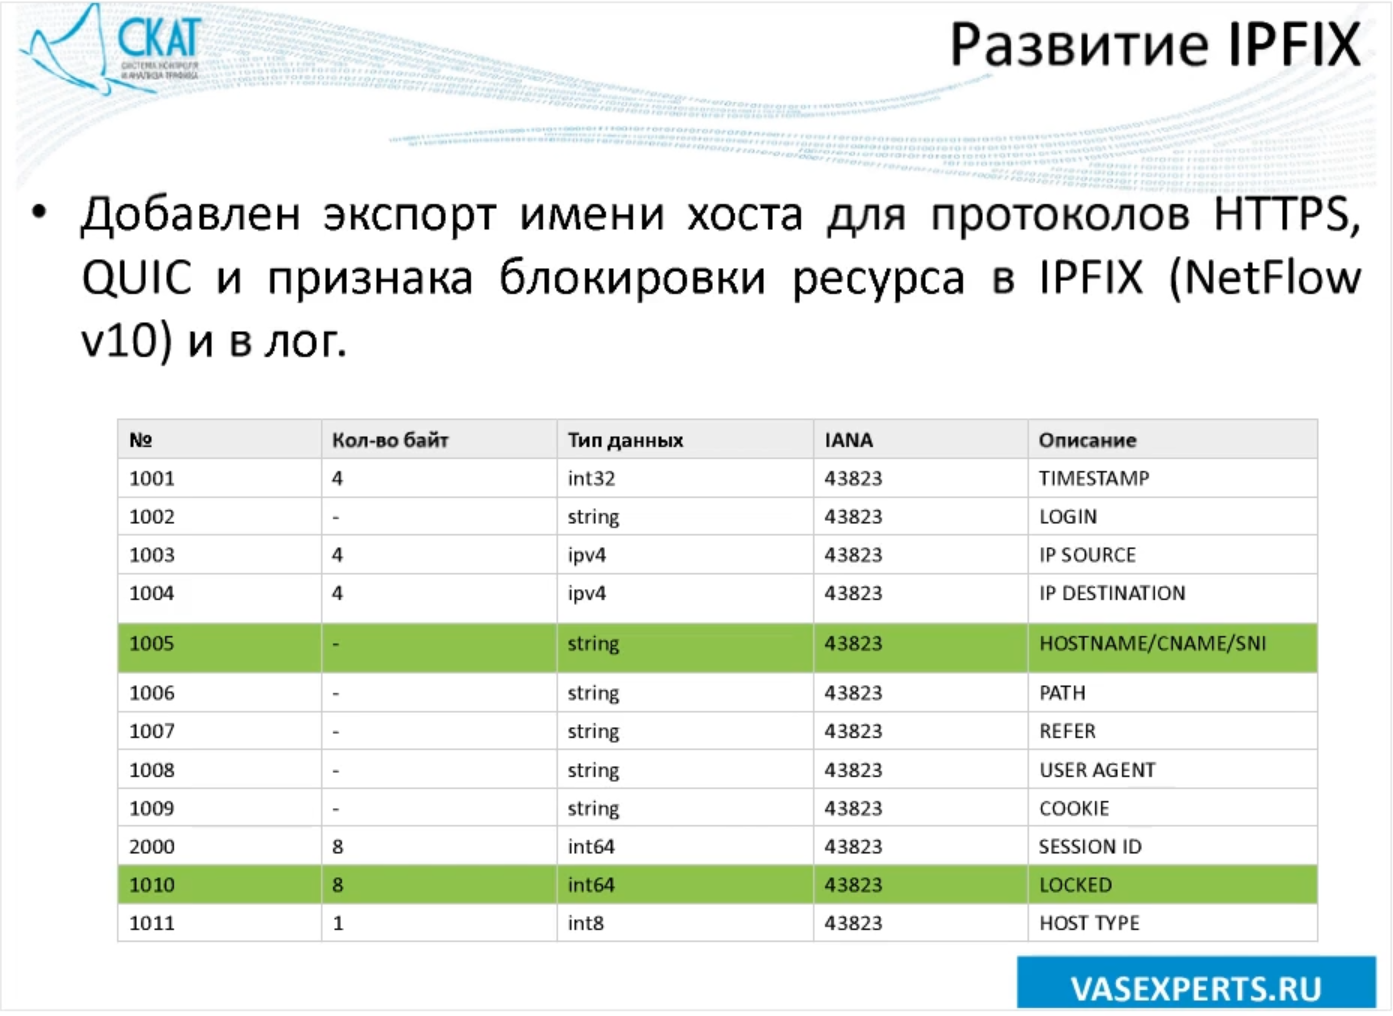 Новые возможности продукта СКАТ DPI 6.0 «Севастополь» от VAS Experts - 3